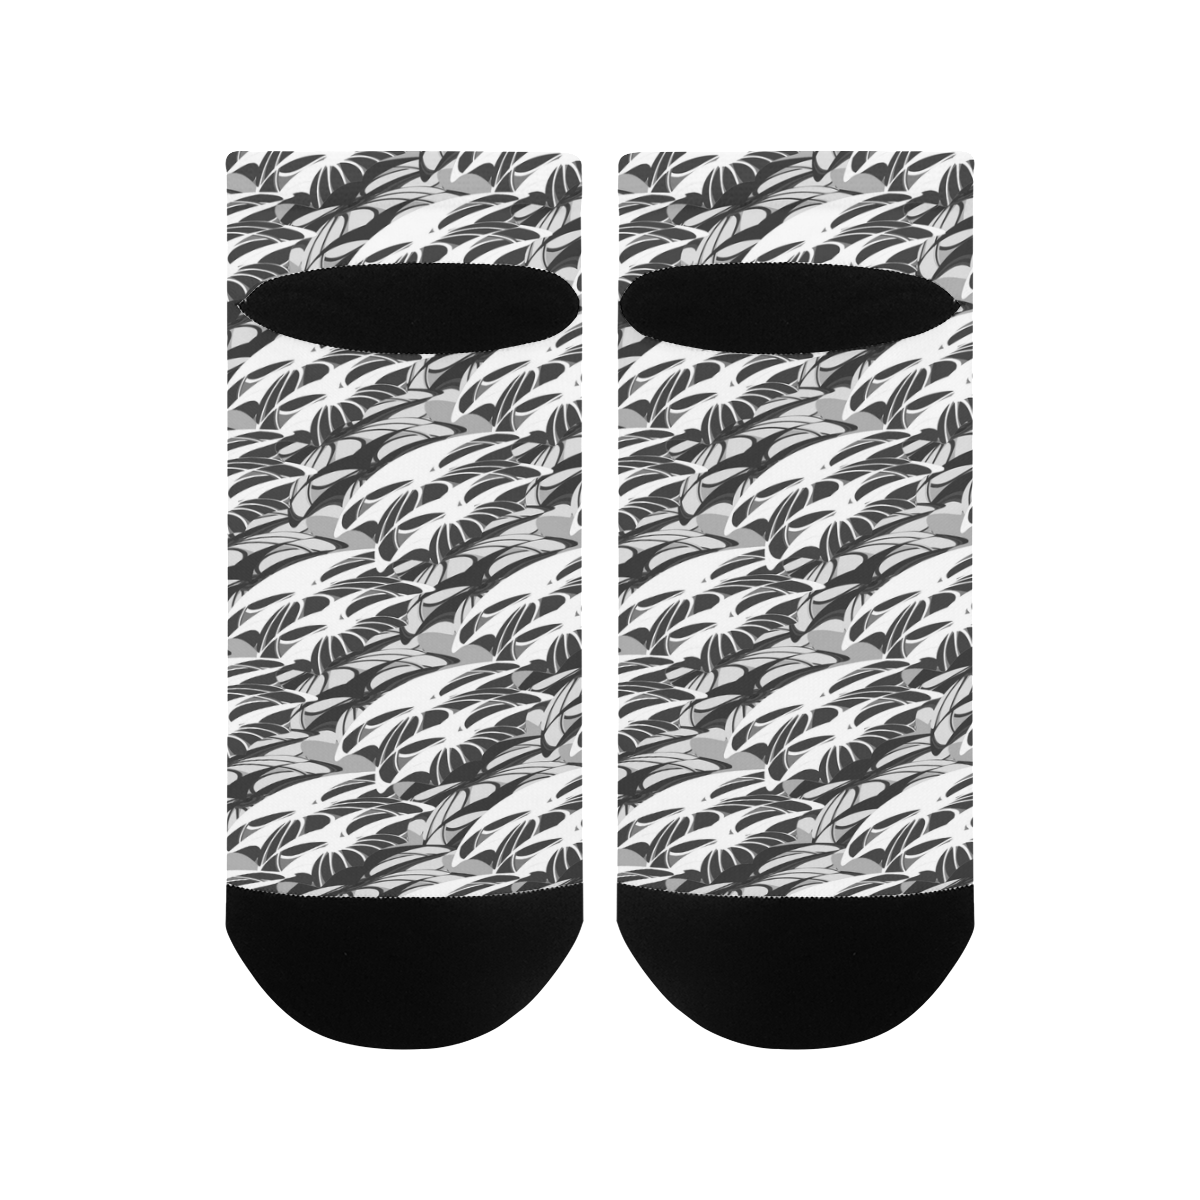 Alien Troops - Black & White Men's Ankle Socks